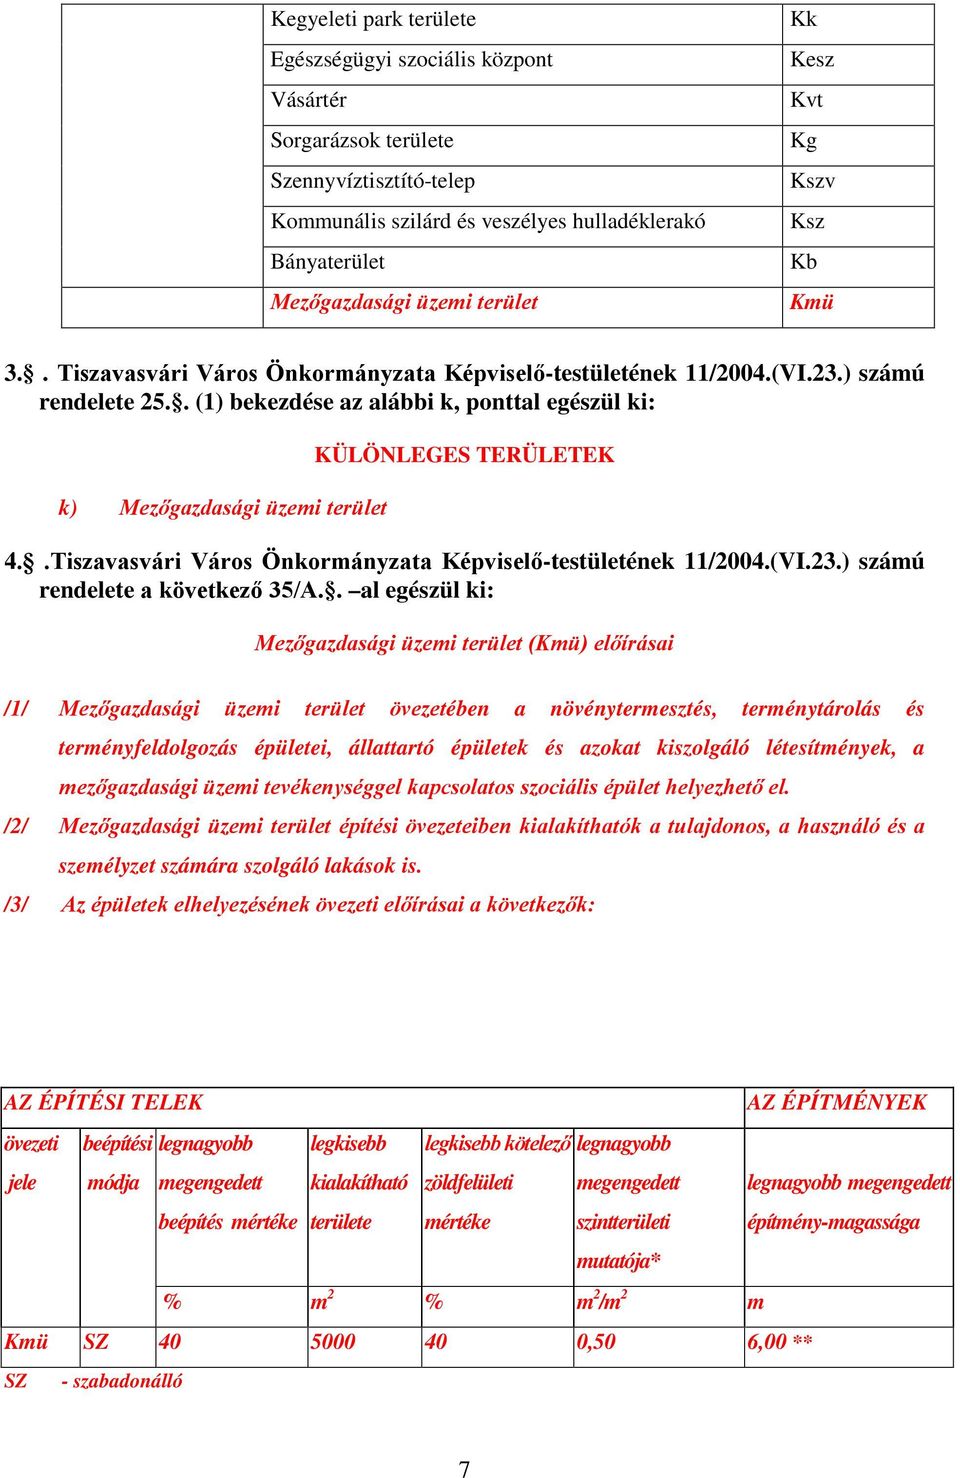 . (1) bekezdése az alábbi k, ponttal egészül ki: k) Mezőgazdasági üzemi terület KÜLÖNLEGES TERÜLETEK 4..Tiszavasvári Város Önkormányzata Képviselő-testületének 11/2004.(VI.23.